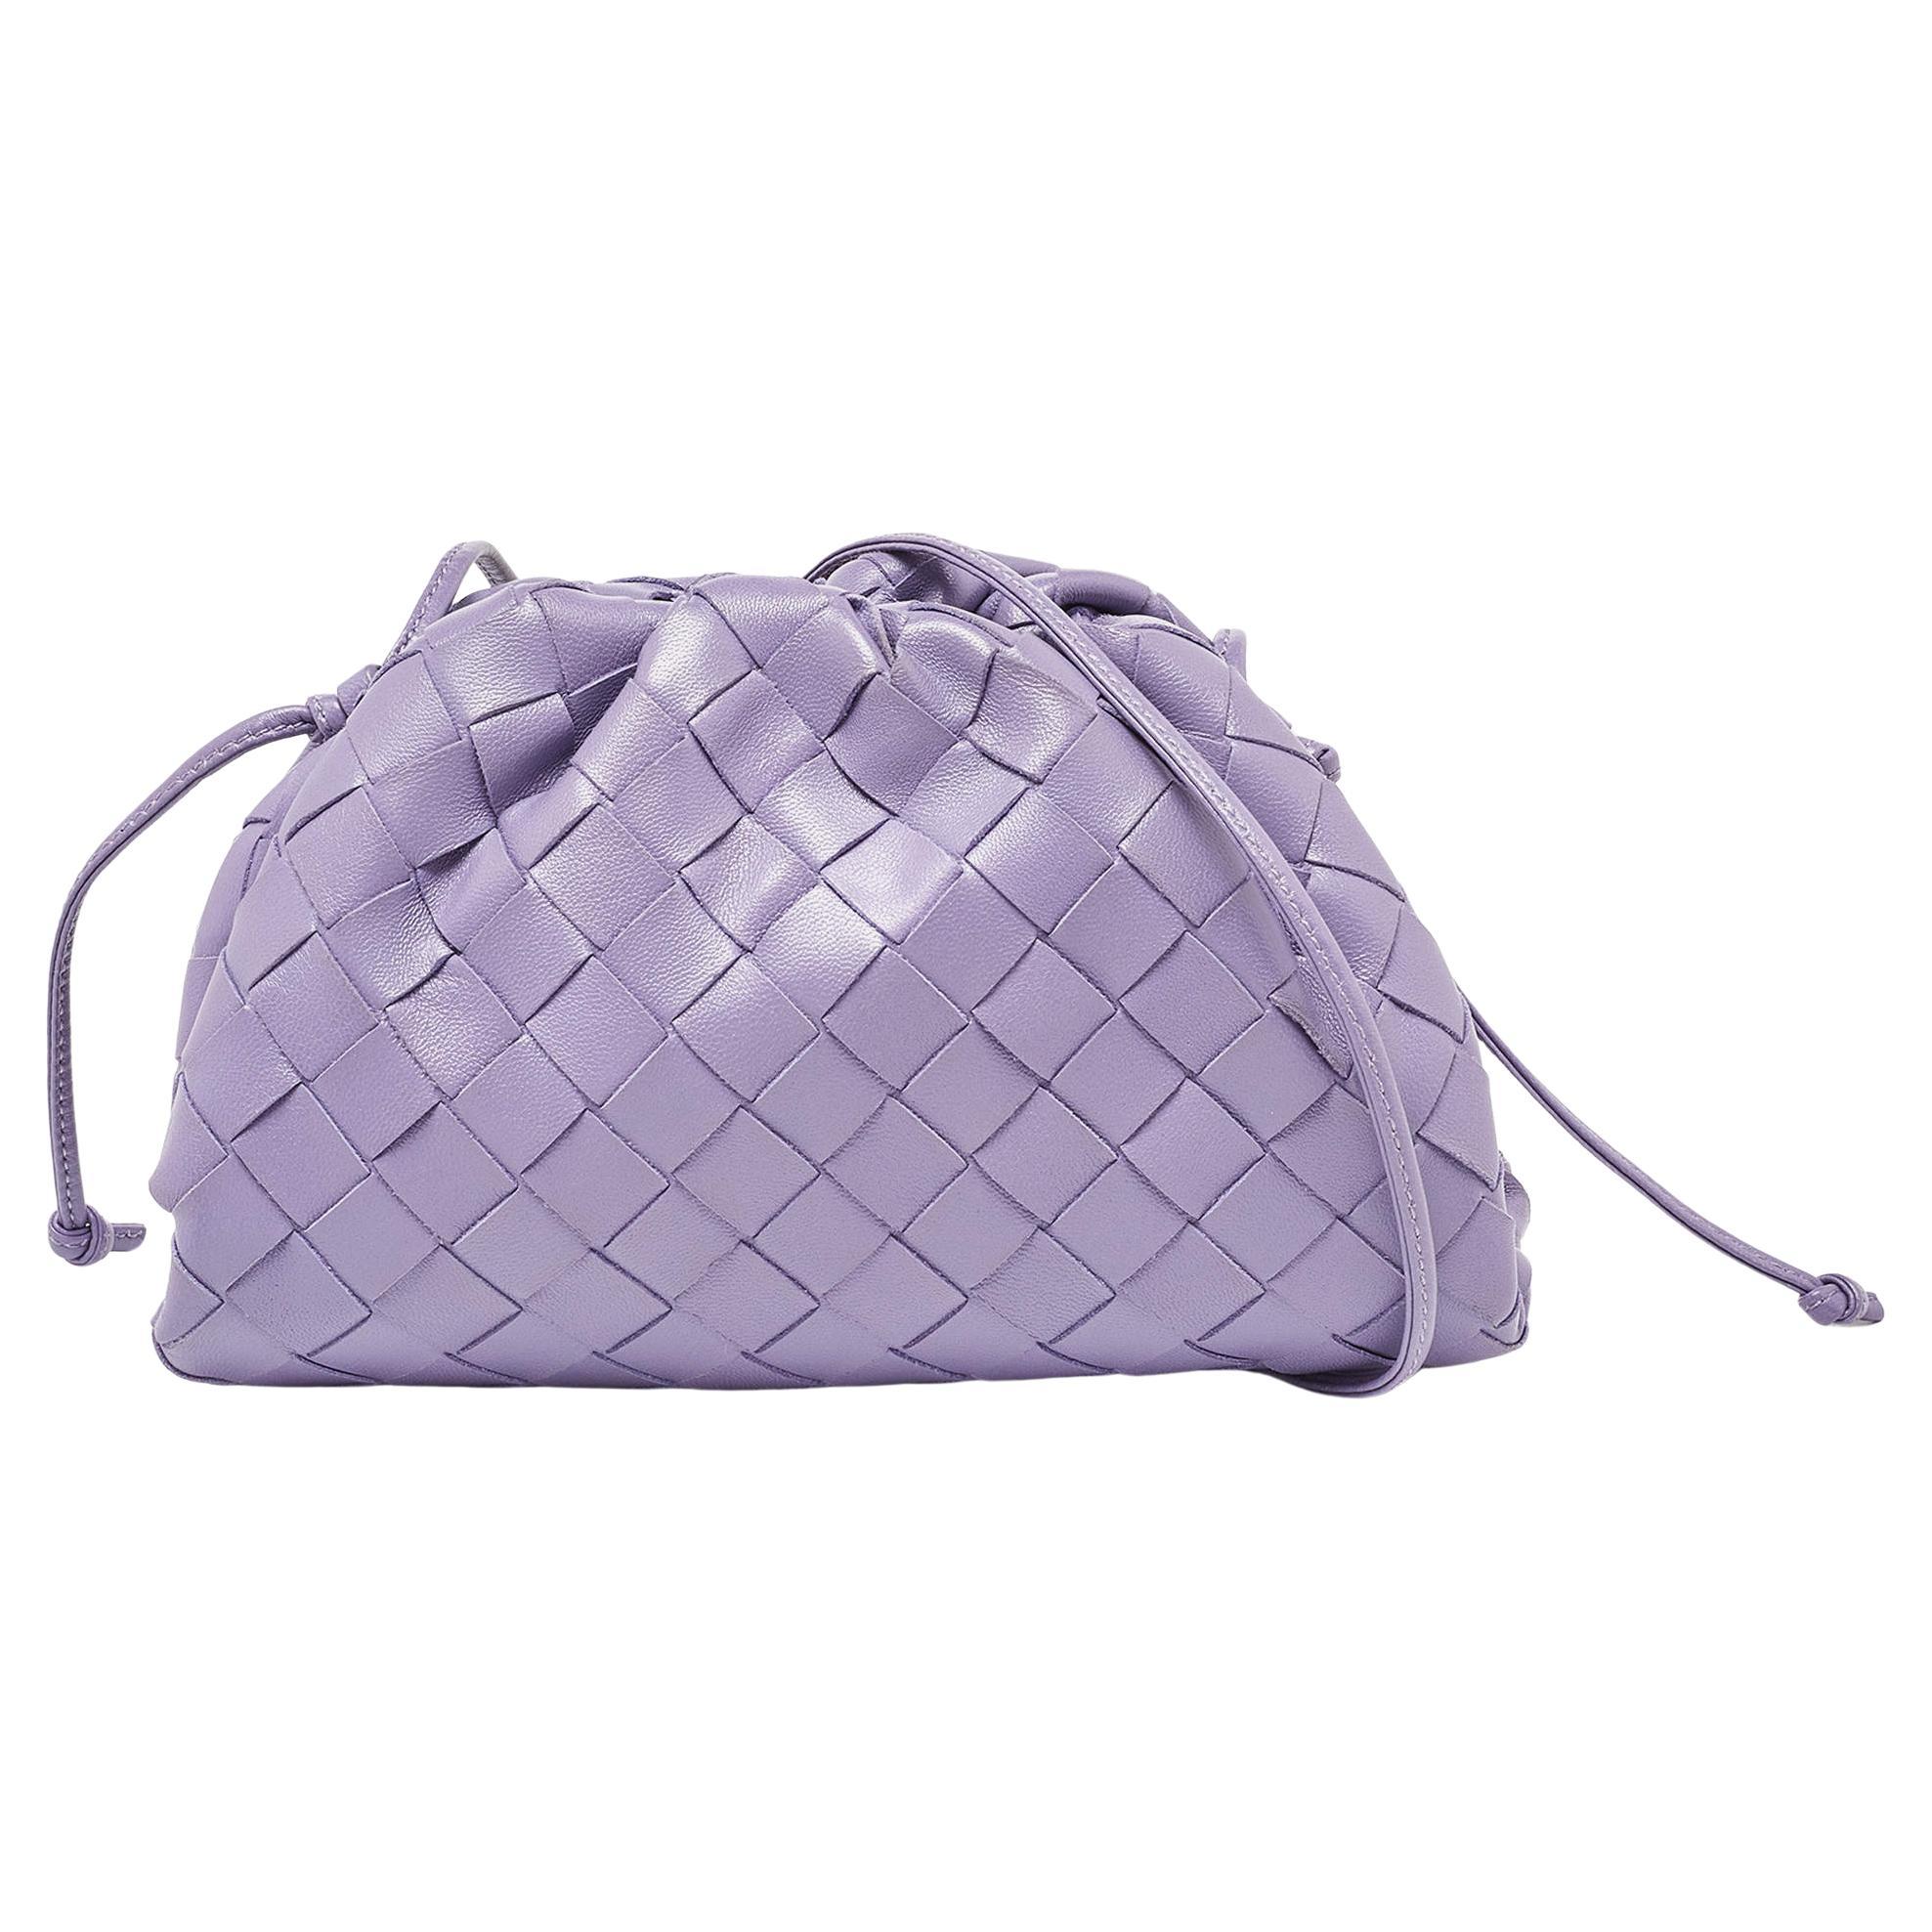 Bottega Veneta Purple Intrecciato Leather Mini The Pouch Bag